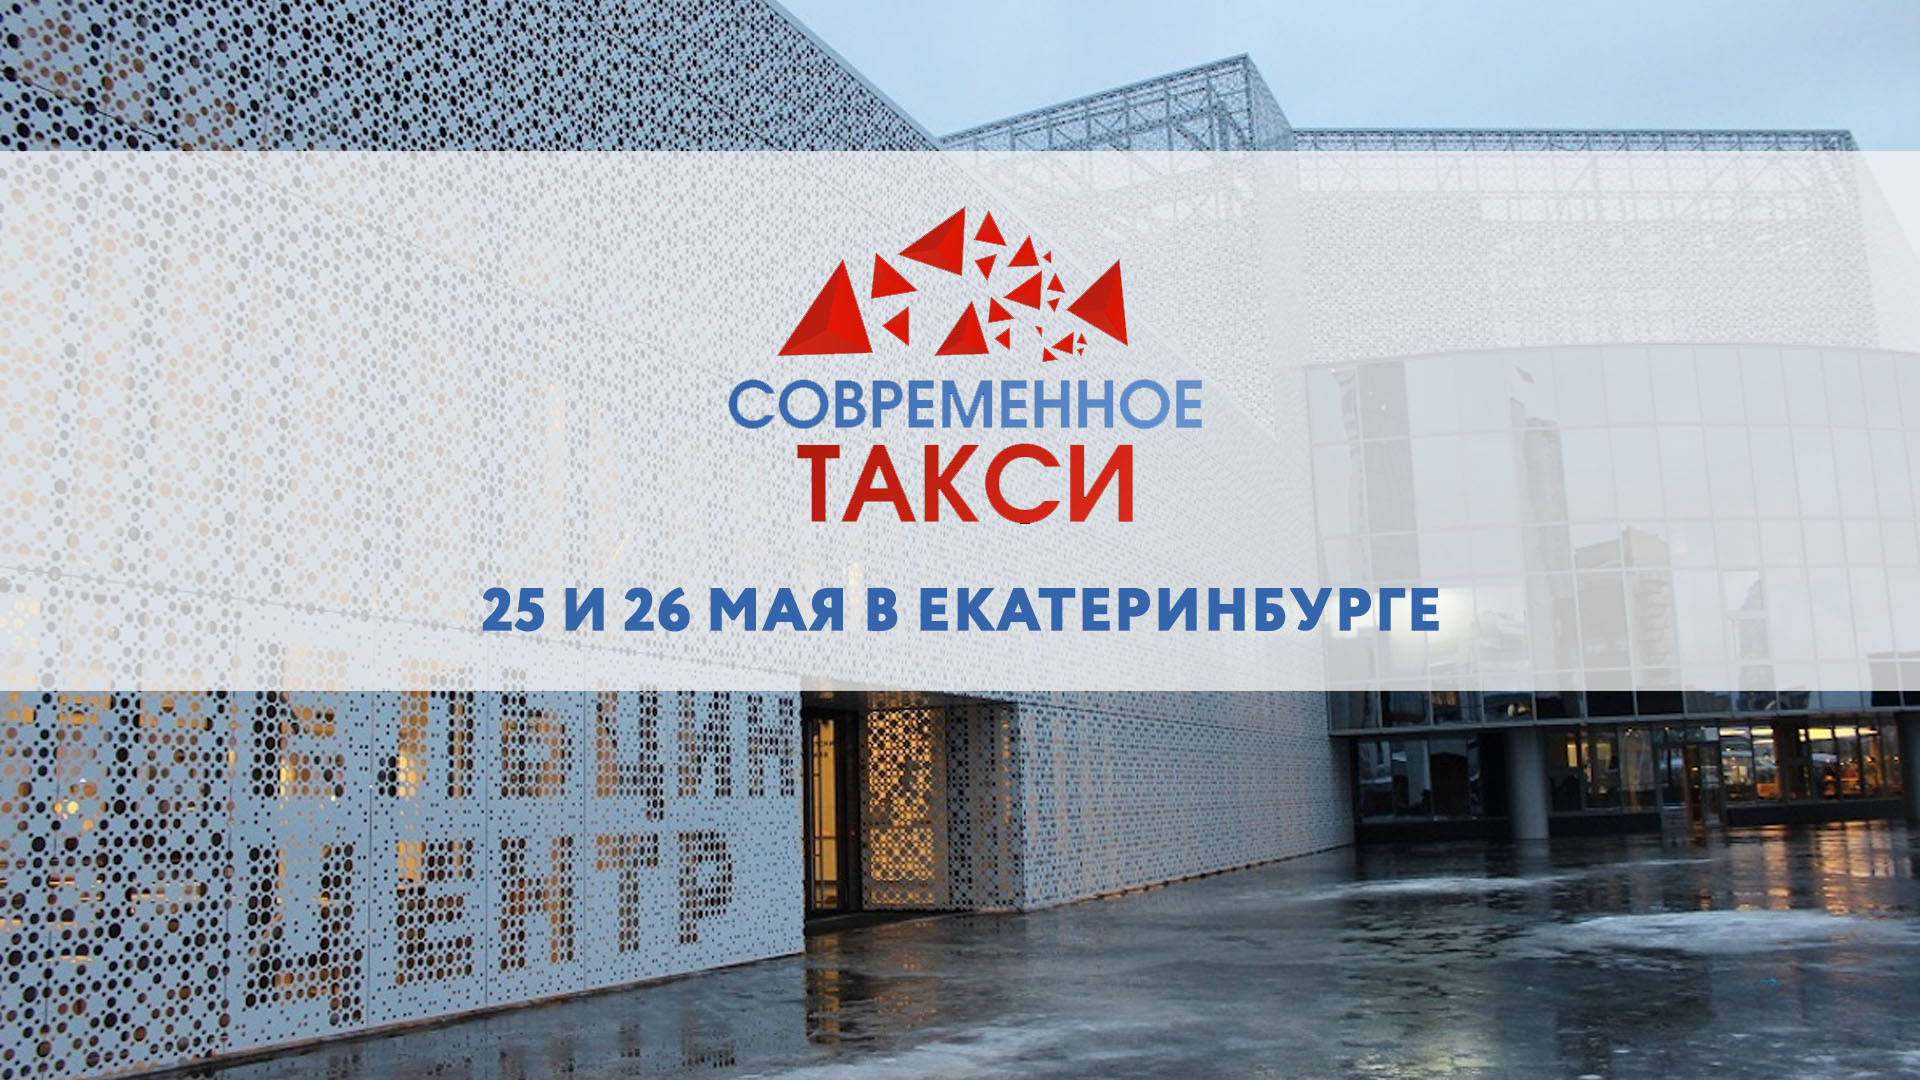 25 и 26 мая в Екатеринбурге пройдет конференция «Современное такси»